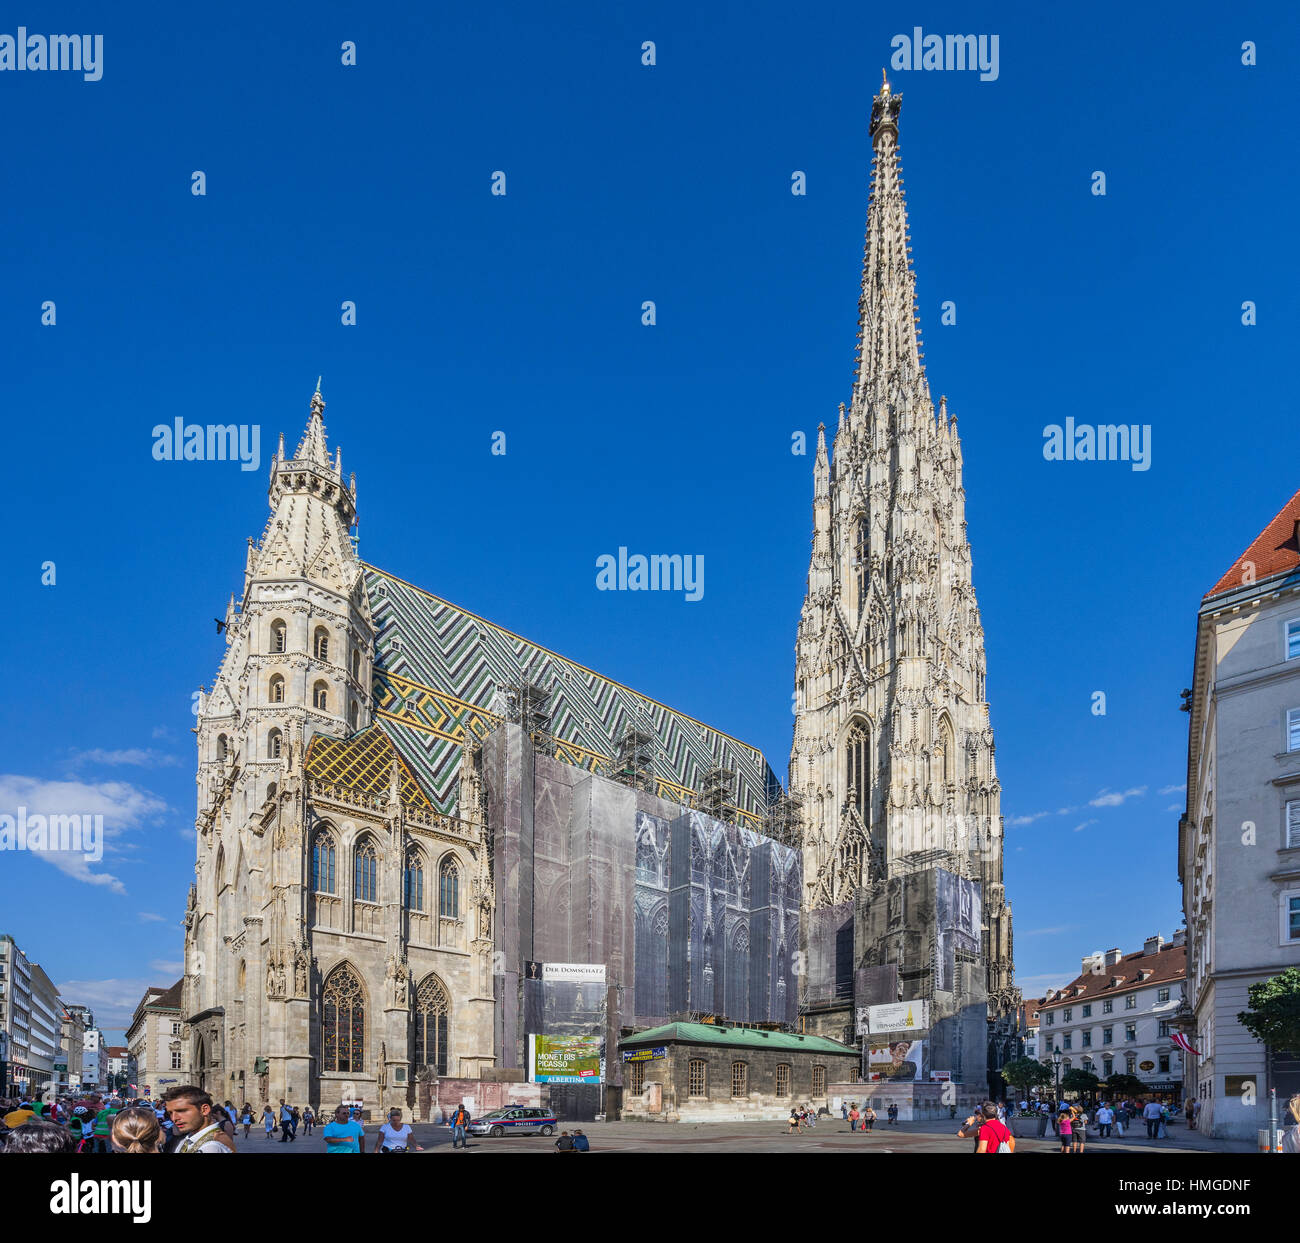 L'Autriche, Vienne, Stephansplatz, conservation et restauration déguisée habilement effords à la cathédrale Saint-Étienne (Stephansdom) Banque D'Images